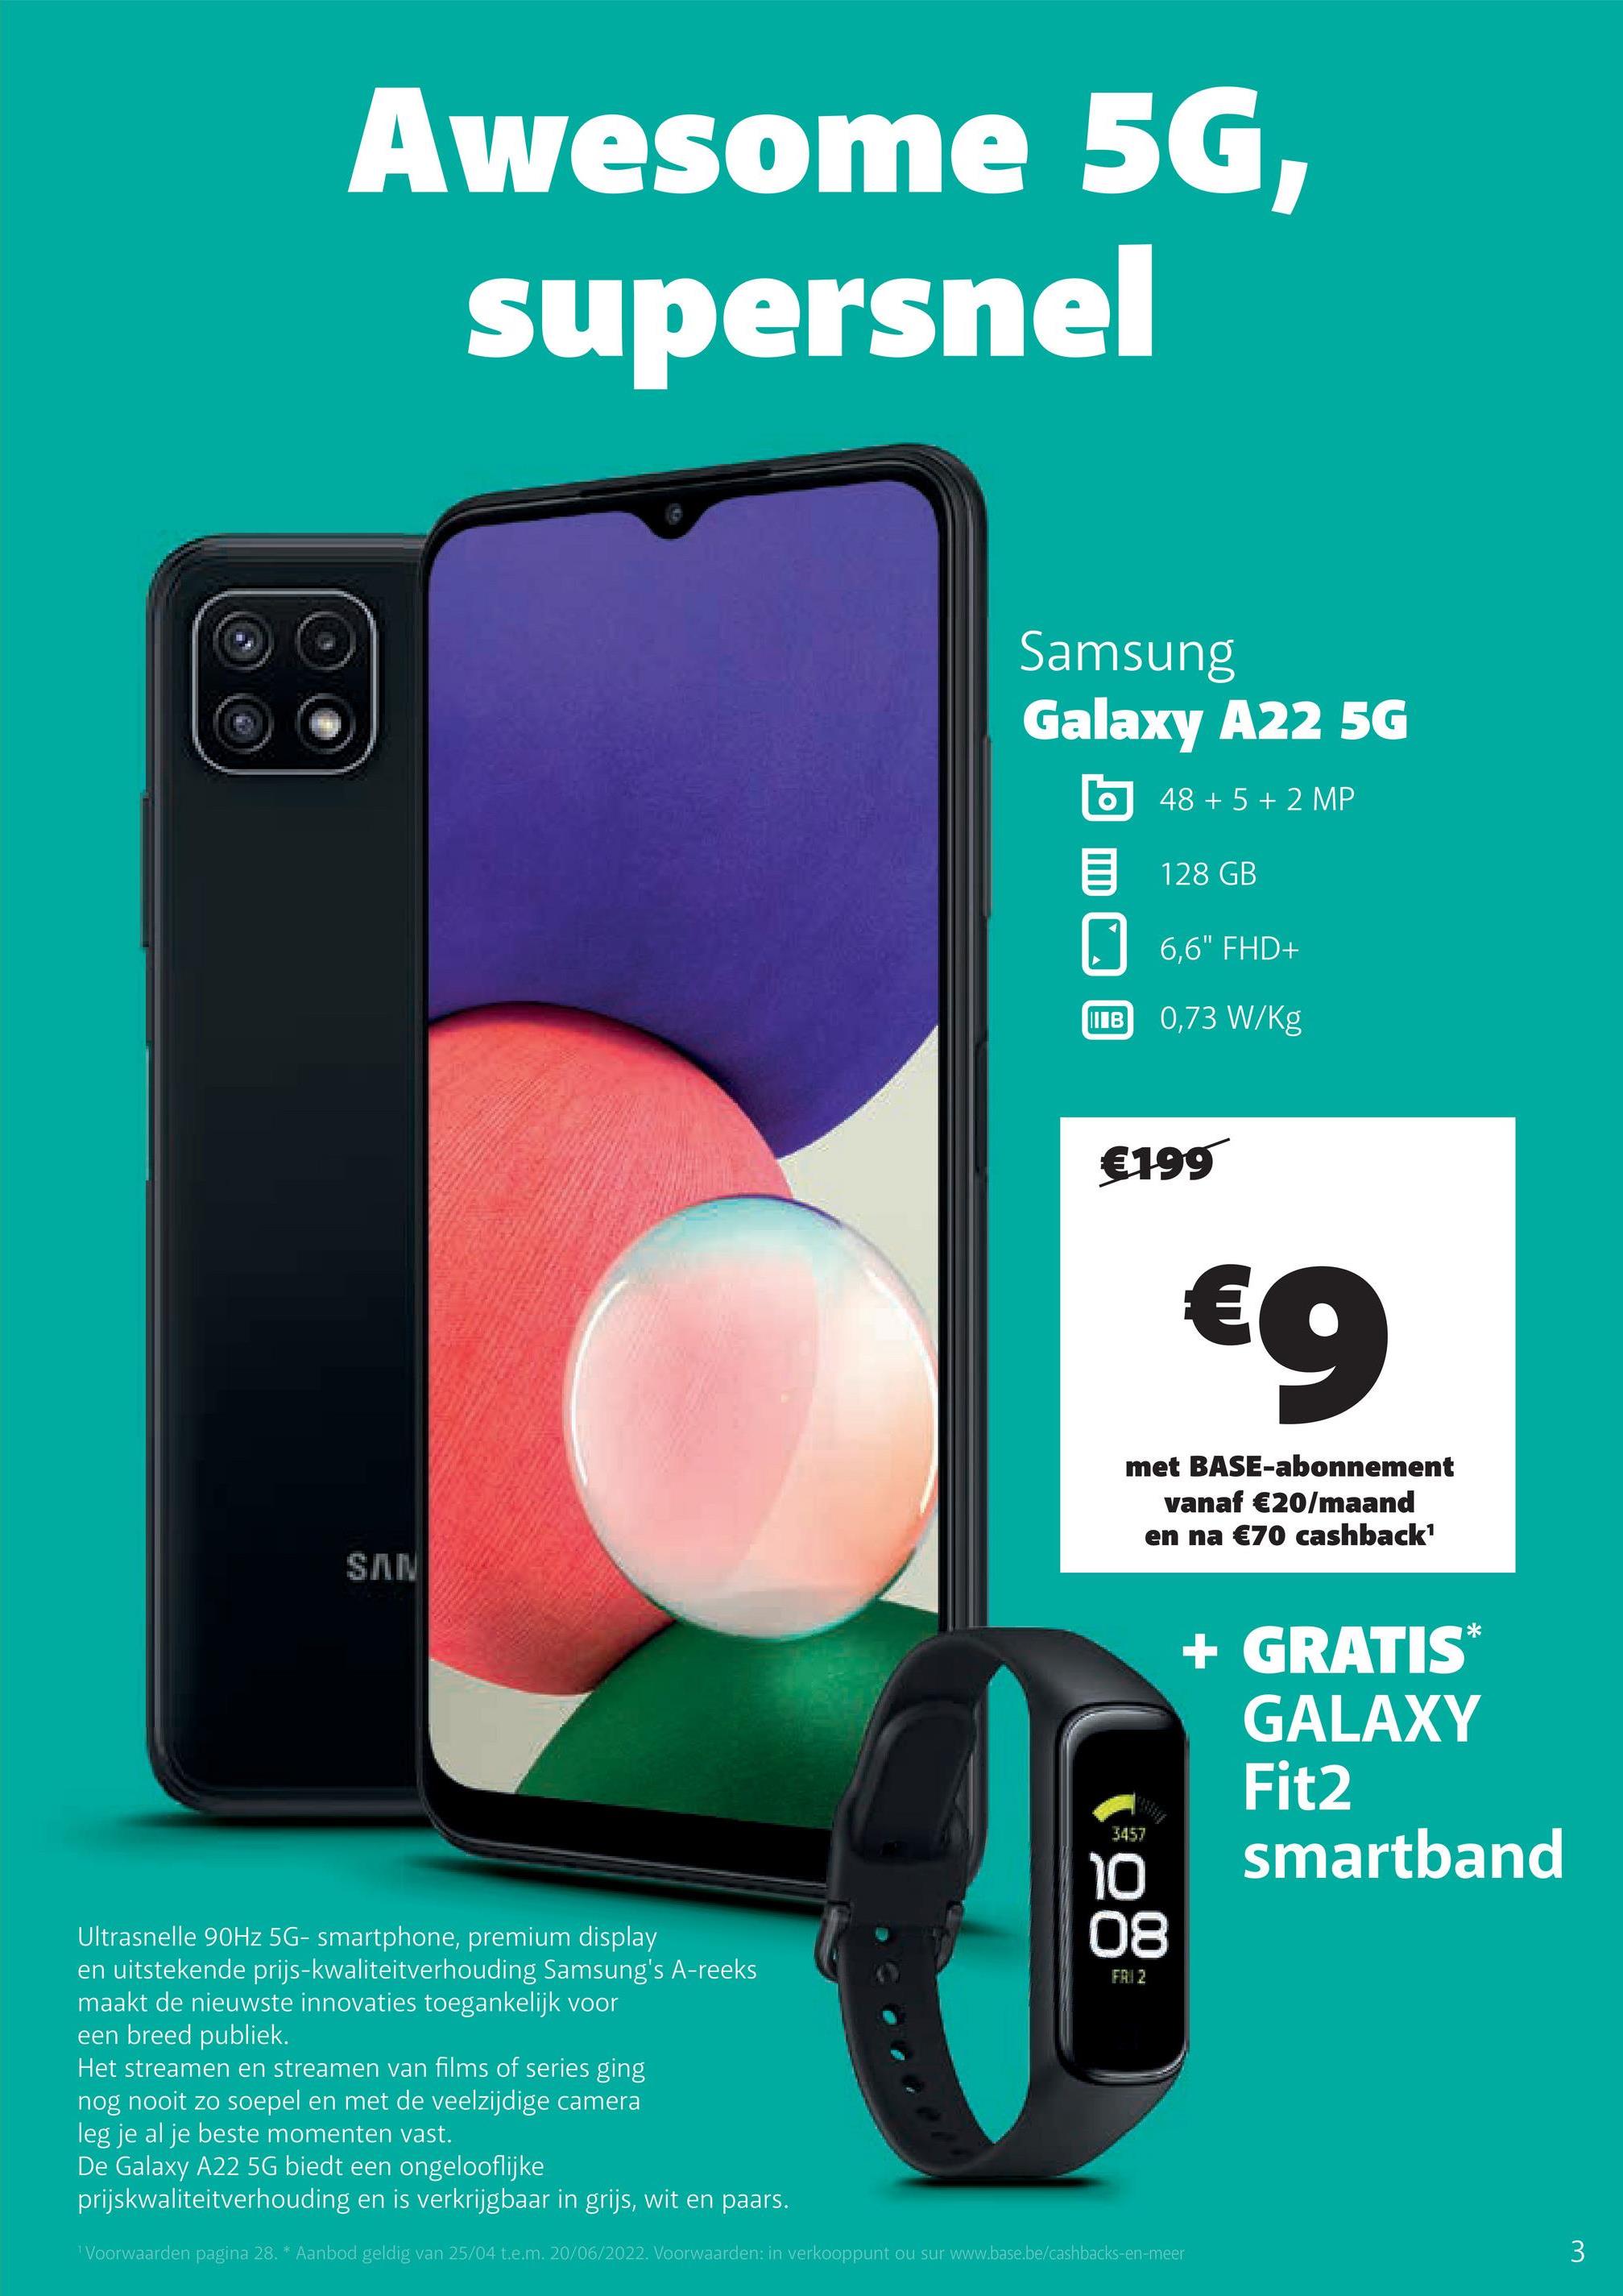 Awesome 5G,
supersnel
SAN
3457
10
Ultrasnelle 90Hz 5G- smartphone, premium display
08
FAI 2
en uitstekende prijs-kwaliteitverhouding Samsung's A-reeks
maakt de nieuwste innovaties toegankelijk voor
een breed publiek.
Het streamen en streamen van films of series ging
nog nooit zo soepel en met de veelzijdige camera
leg je al je beste momenten vast.
De Galaxy A22 5G biedt een ongelooflijke
prijskwaliteitverhouding en is verkrijgbaar in grijs, wit en paars.
¹ Voorwaarden pagina 28. * Aanbod geldig van 25/04 t.e.m. 20/06/2022. Voorwaarden: in verkooppunt ou sur www.base.be/cashbacks-en-meer
Samsung
Galaxy A22 5G
O
48 + 5 + 2 MP
128 GB
6,6" FHD+
0,73 W/kg
I в
€199
€9
met BASE-abonnement
vanaf €20/maand
en na €70 cashback¹
+ GRATIS*
GALAXY
Fit2
smartband
3